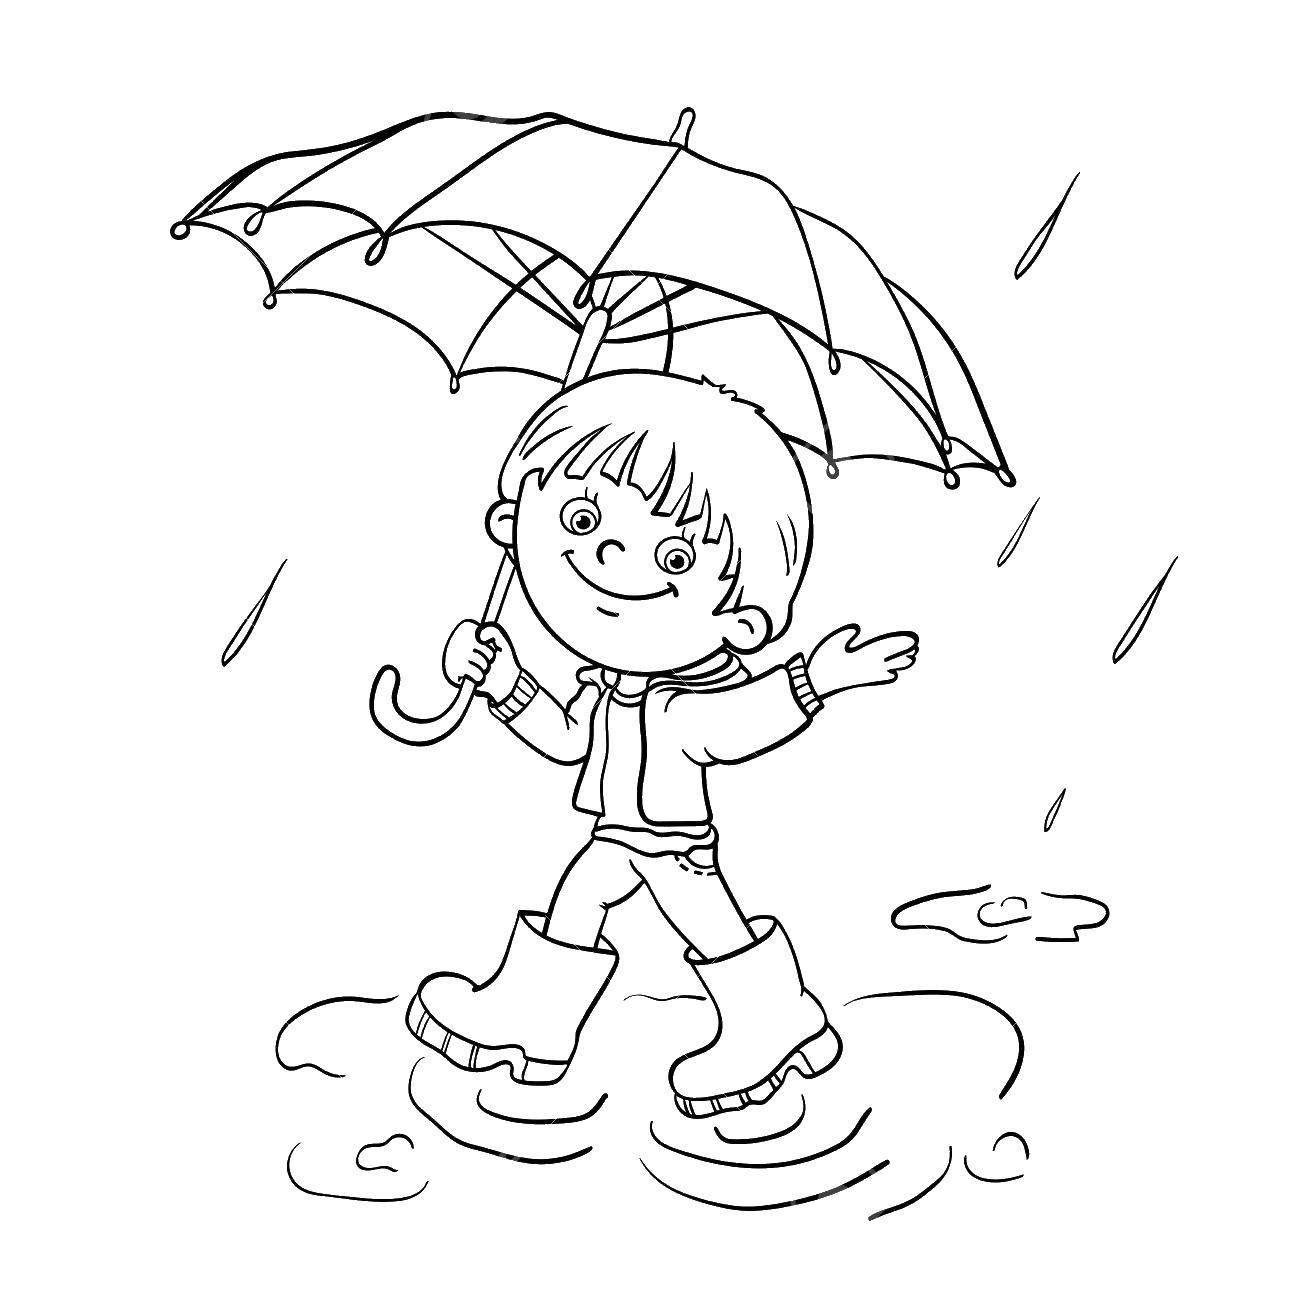 Раскраска мальчик с зонтиком под дождем